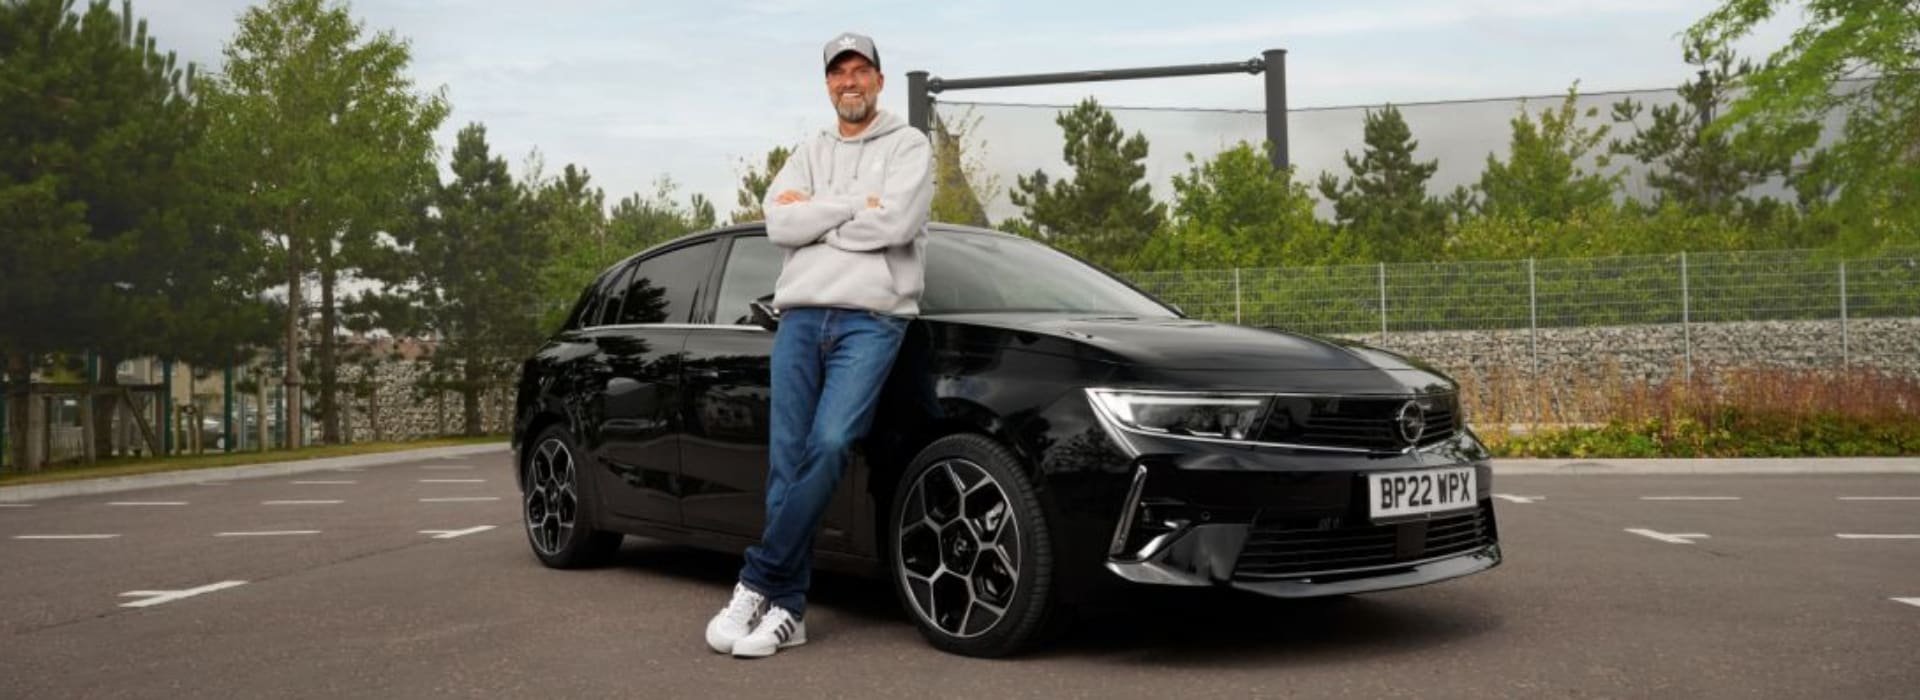 Opel-ambassadeur Jürgen Klopp heeft zijn nieuwe Opel Astra Plug-in Hybrid in ontvangst genomen